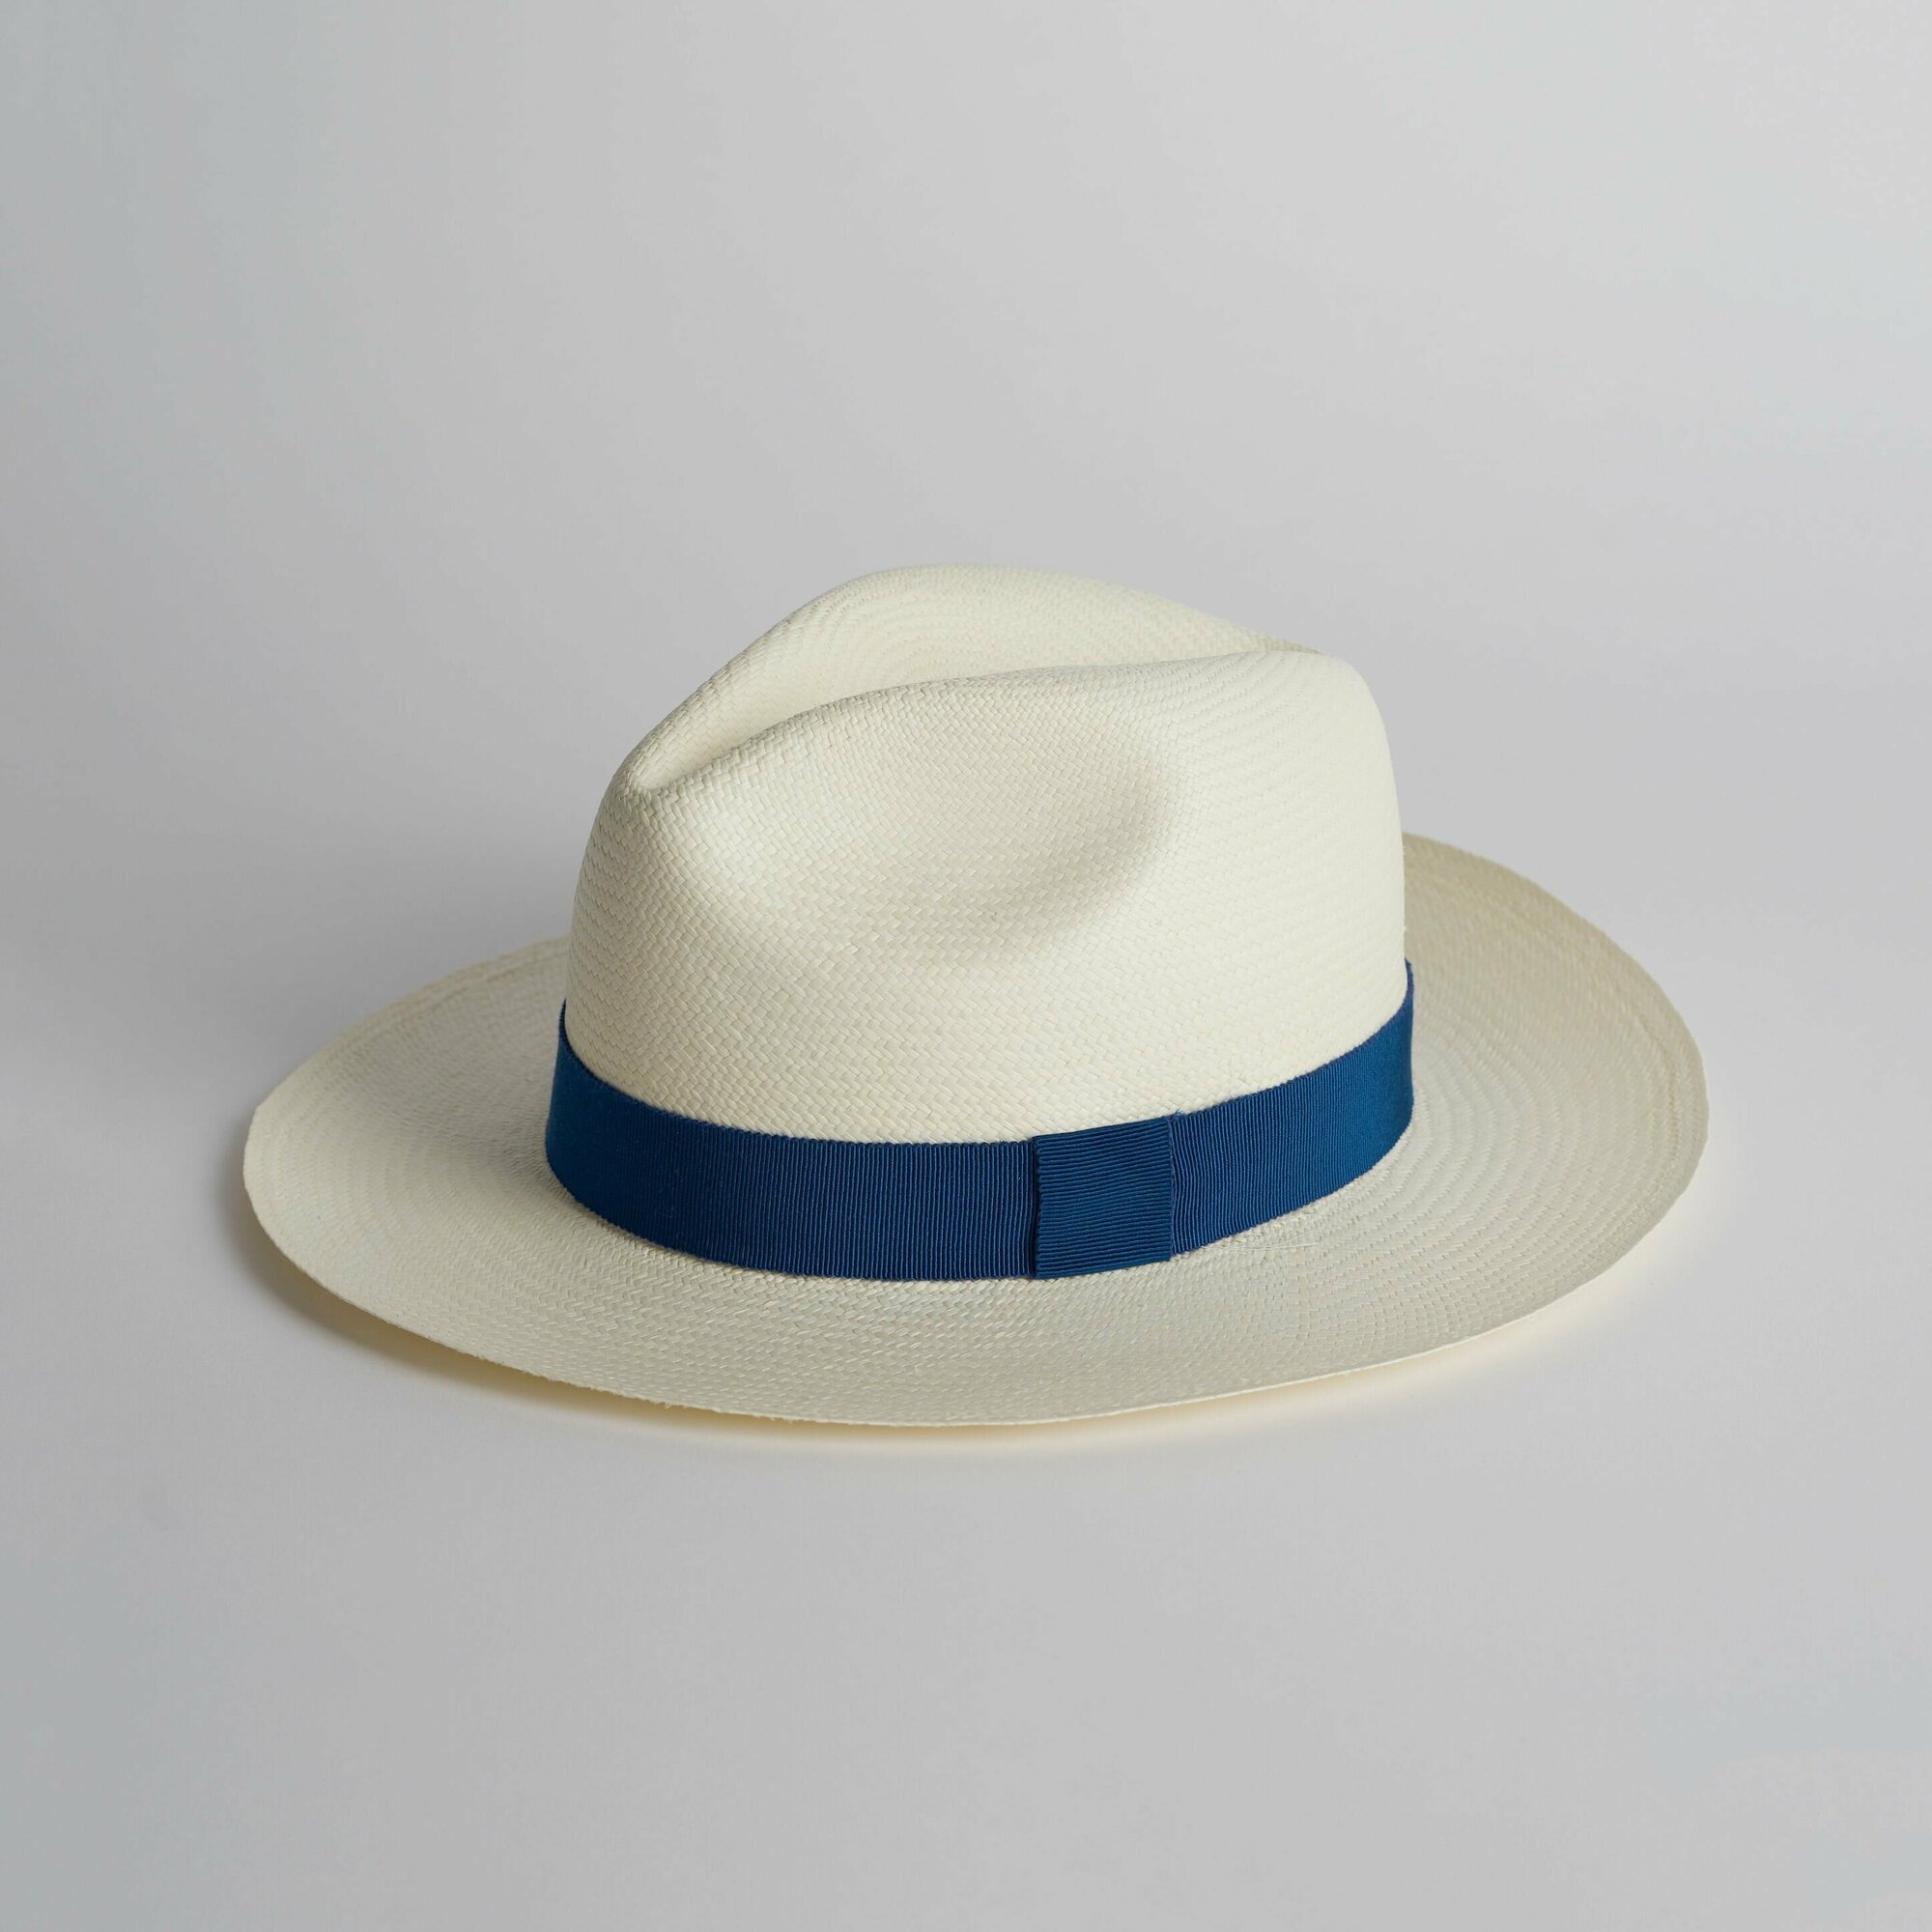 Соломенная эквадорская шляпа Федора c синей лентой 